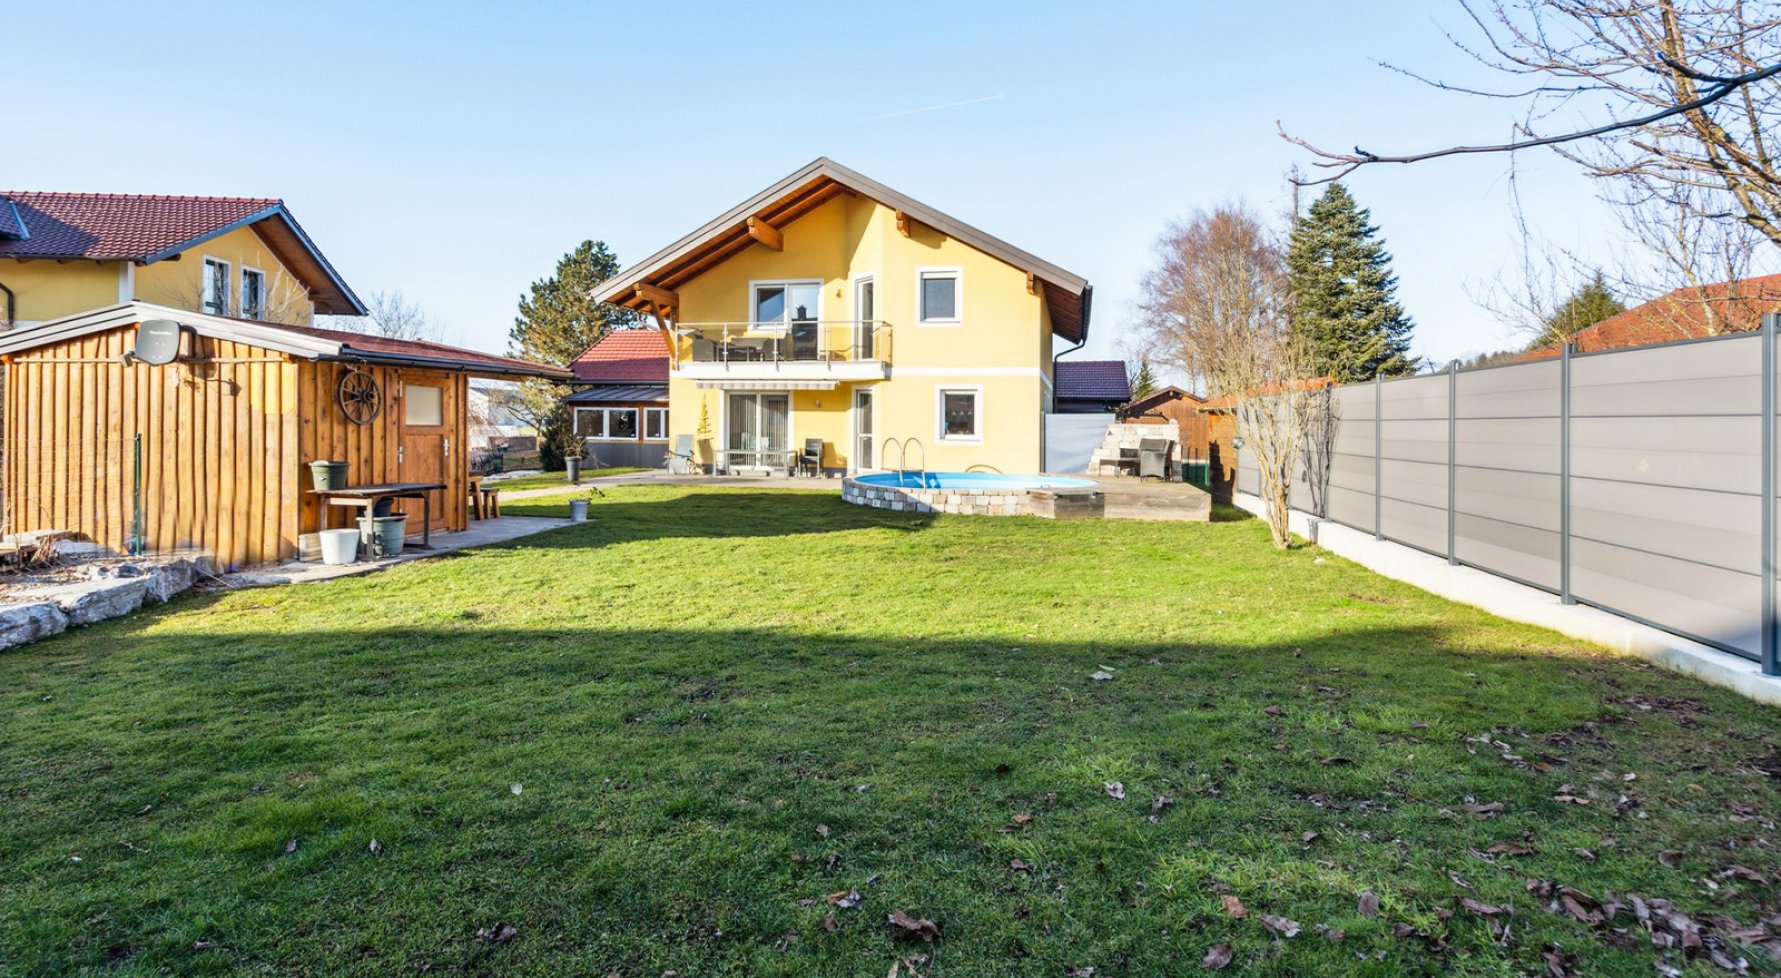 Immobilie in 5221 Lochen am See: Einfamilienhaus mit Pool in ruhiger Wohnlage - bild 1